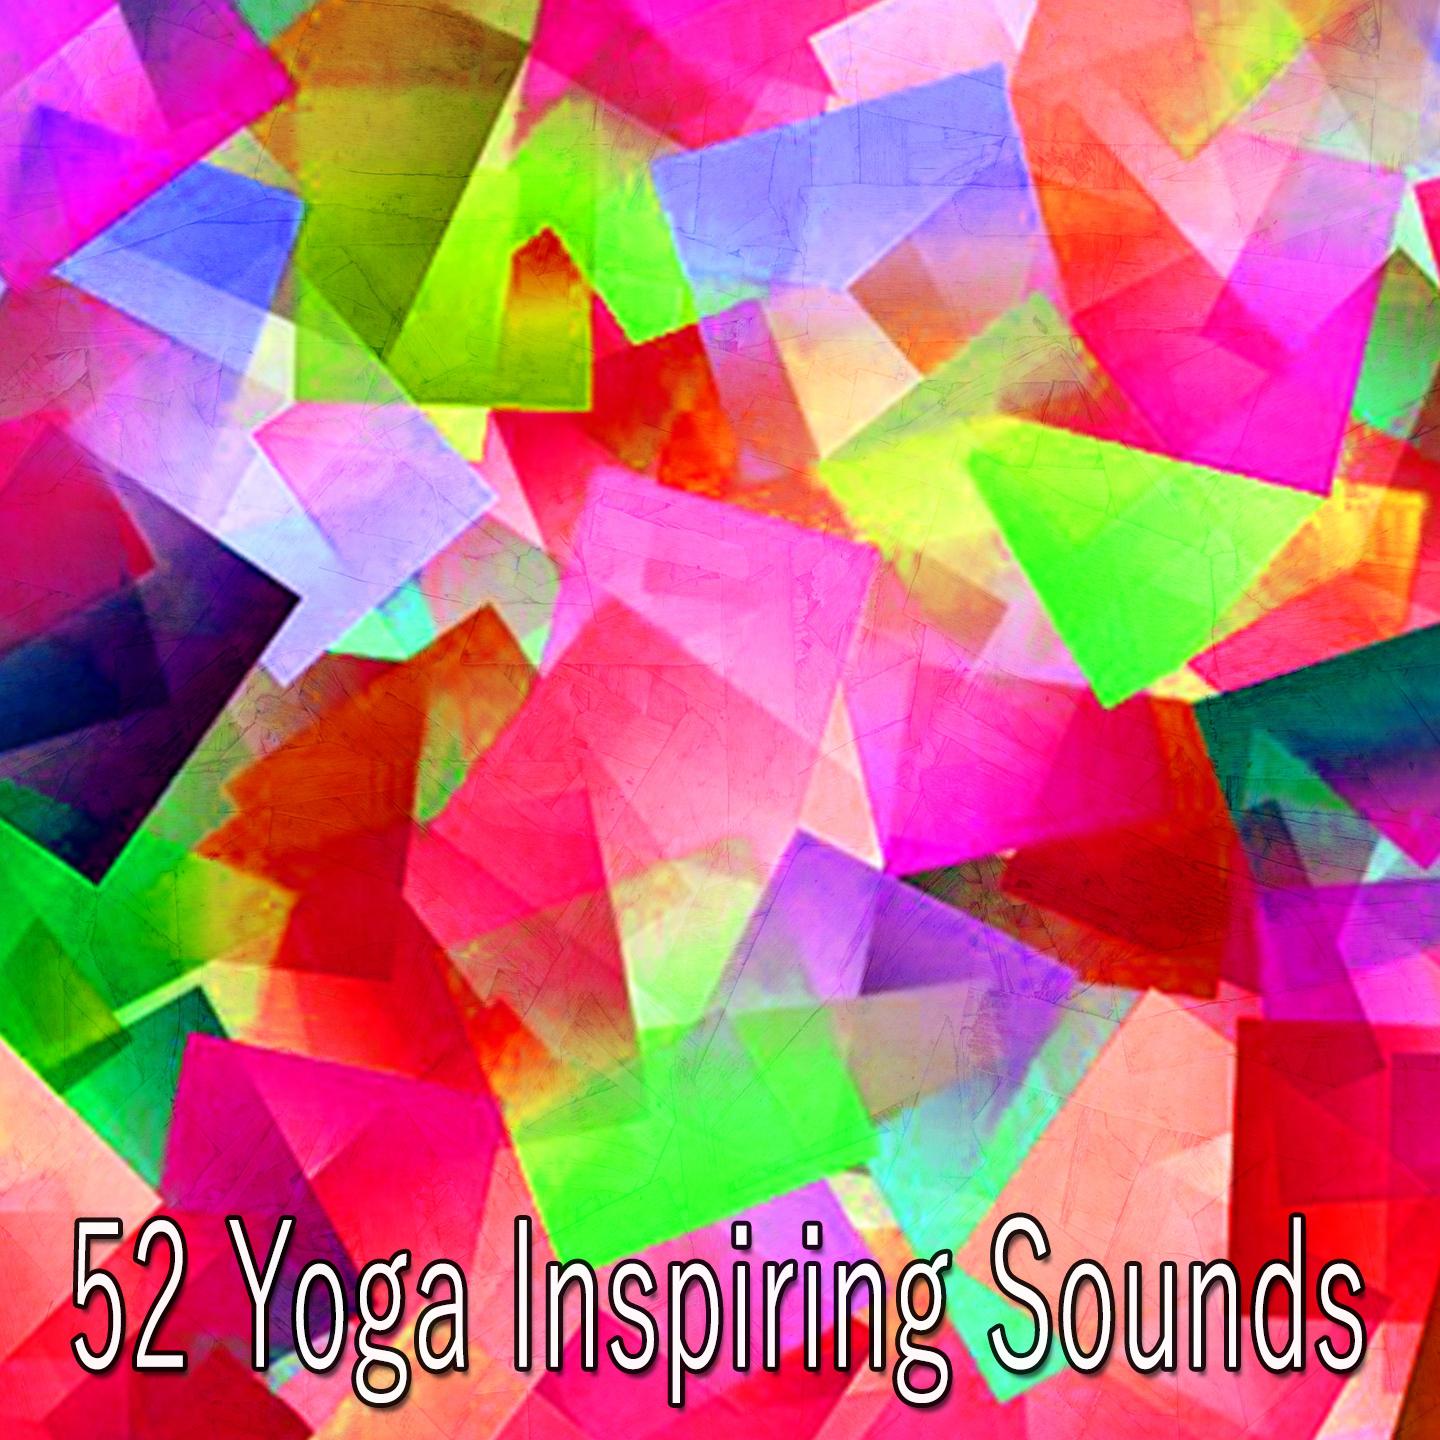 52 Yoga Inspiring Sounds